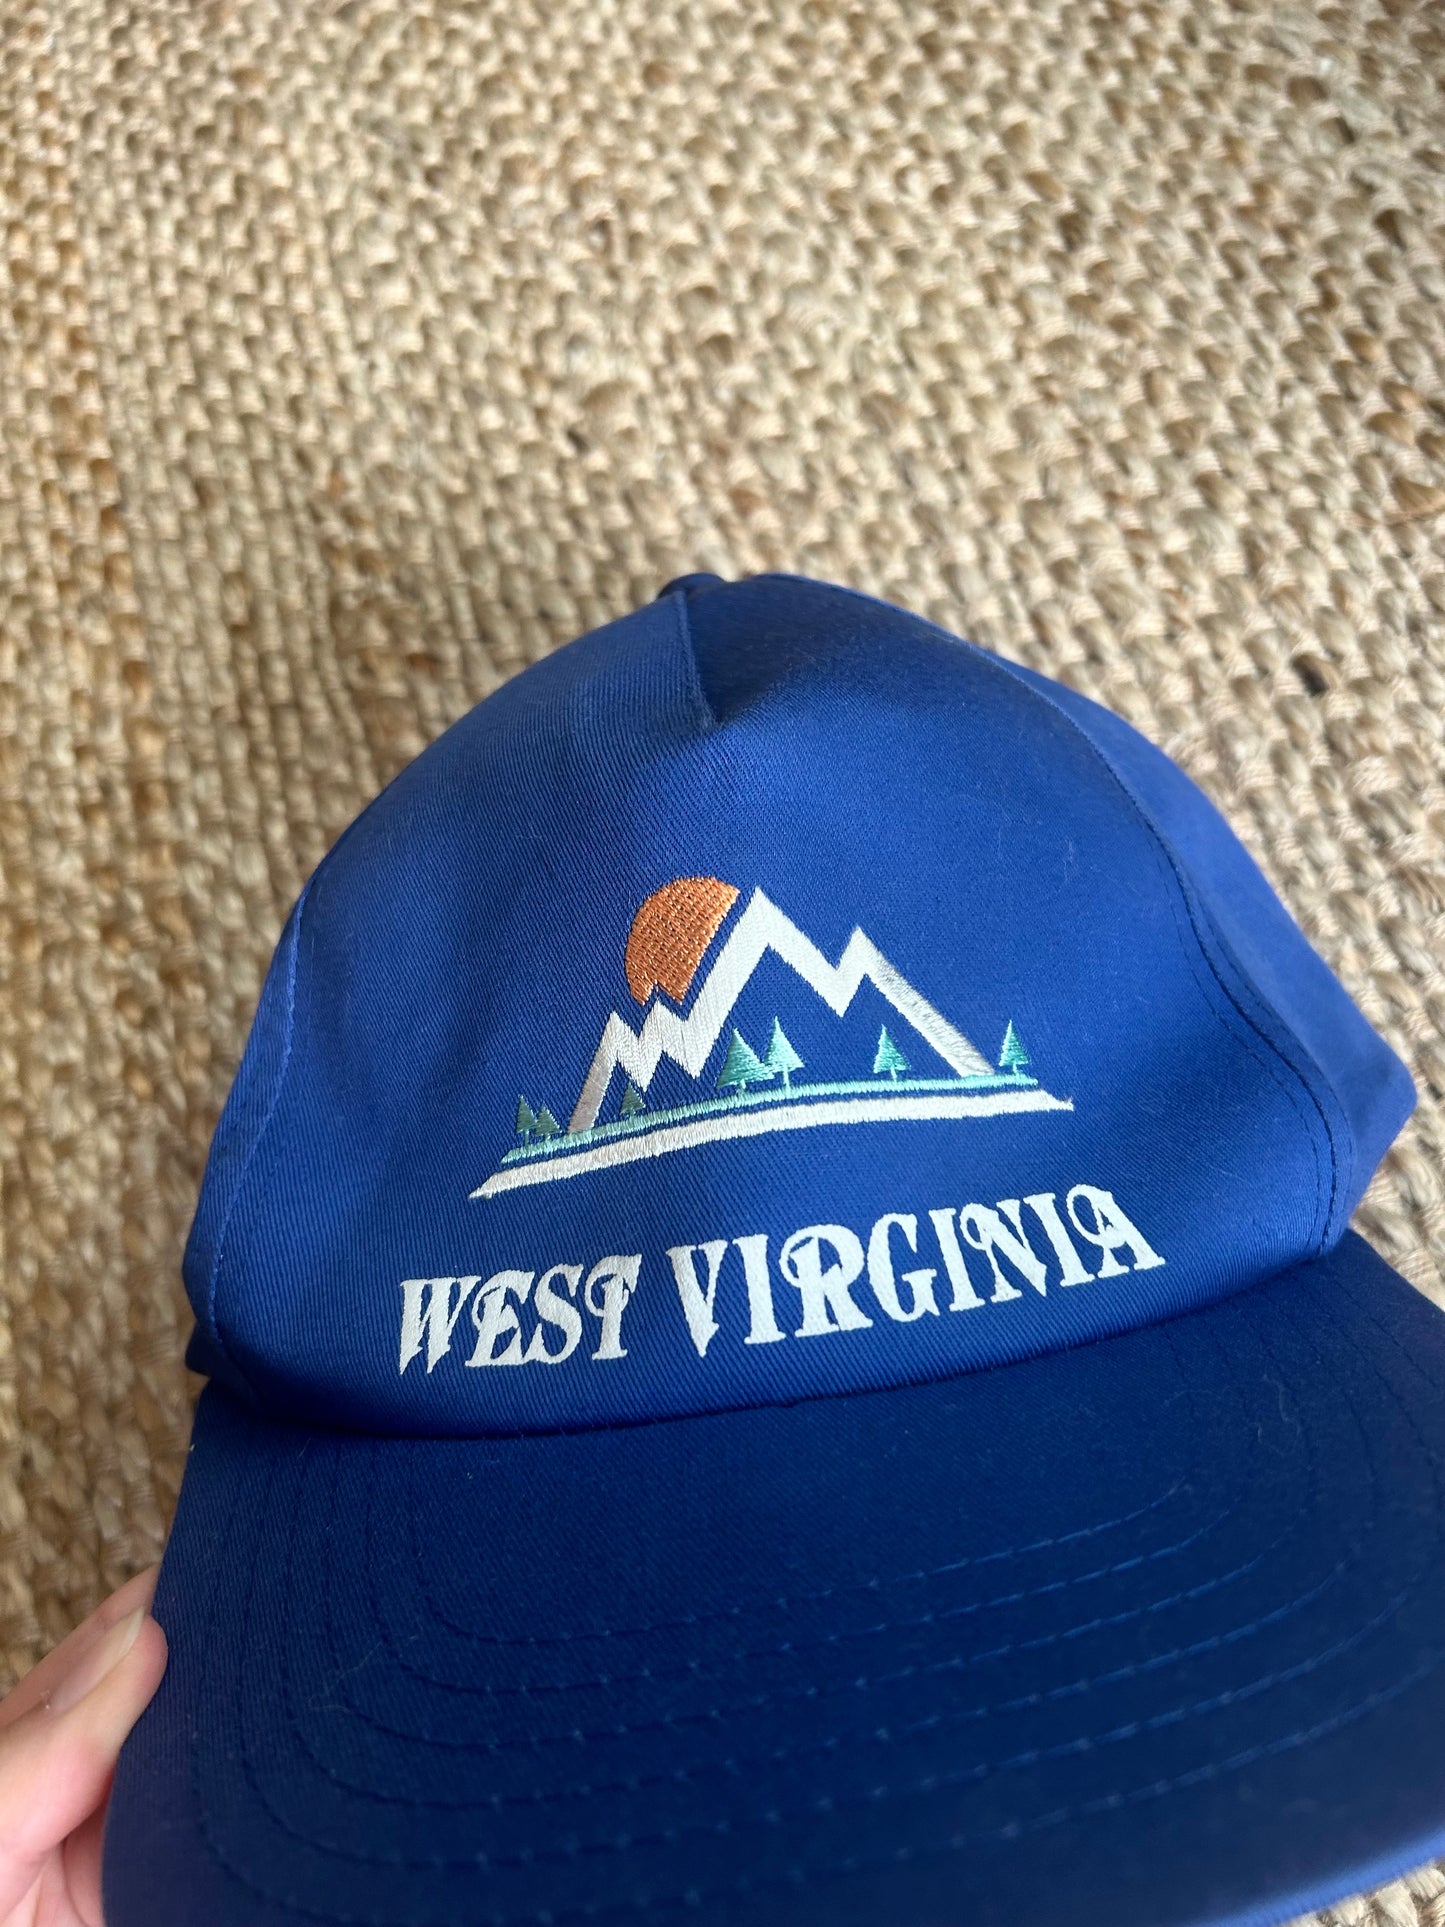 Vintage West Virginia Hat